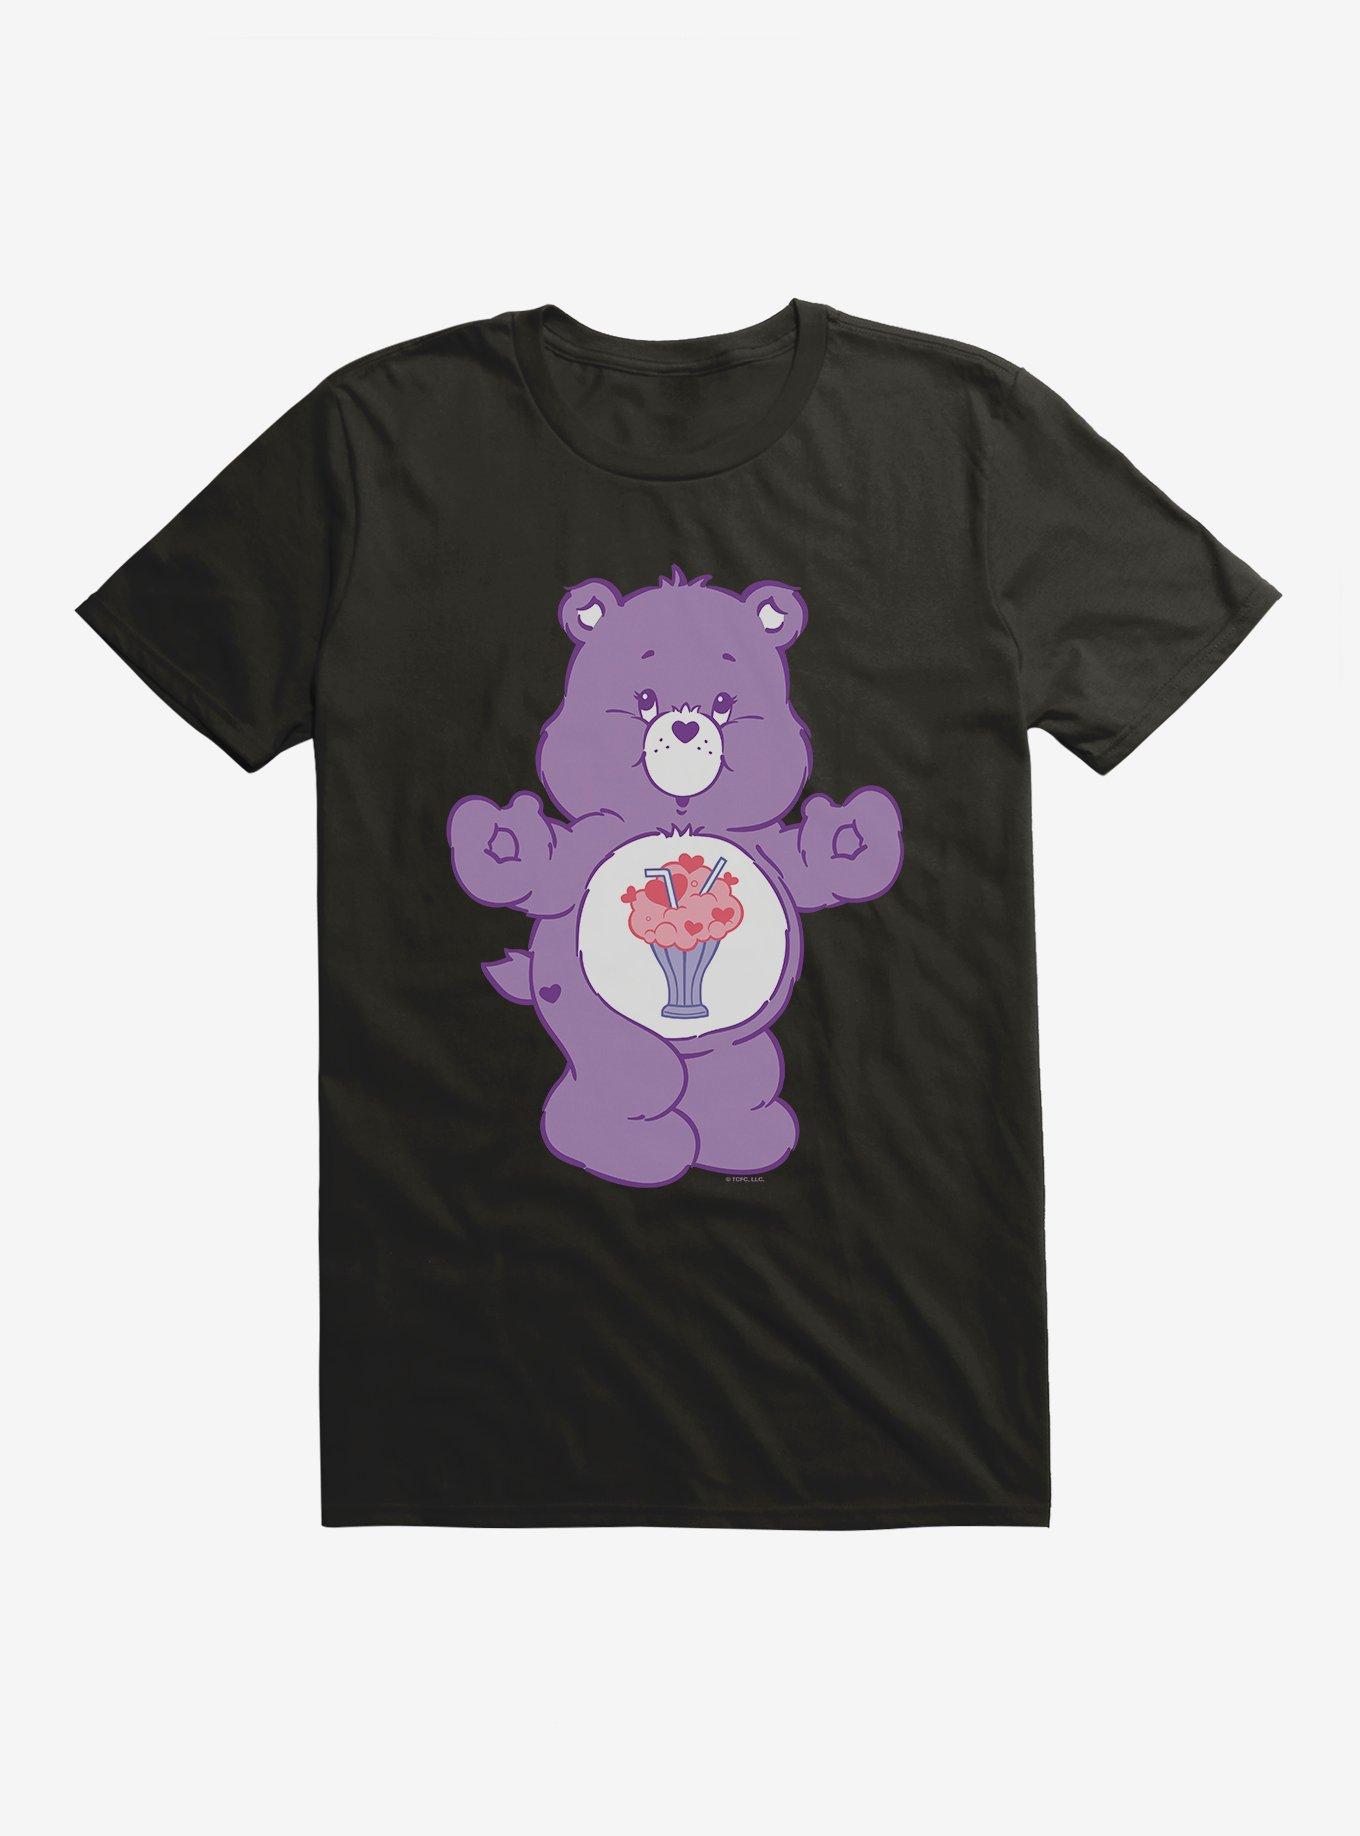 Care Bears Share Bear T-Shirt